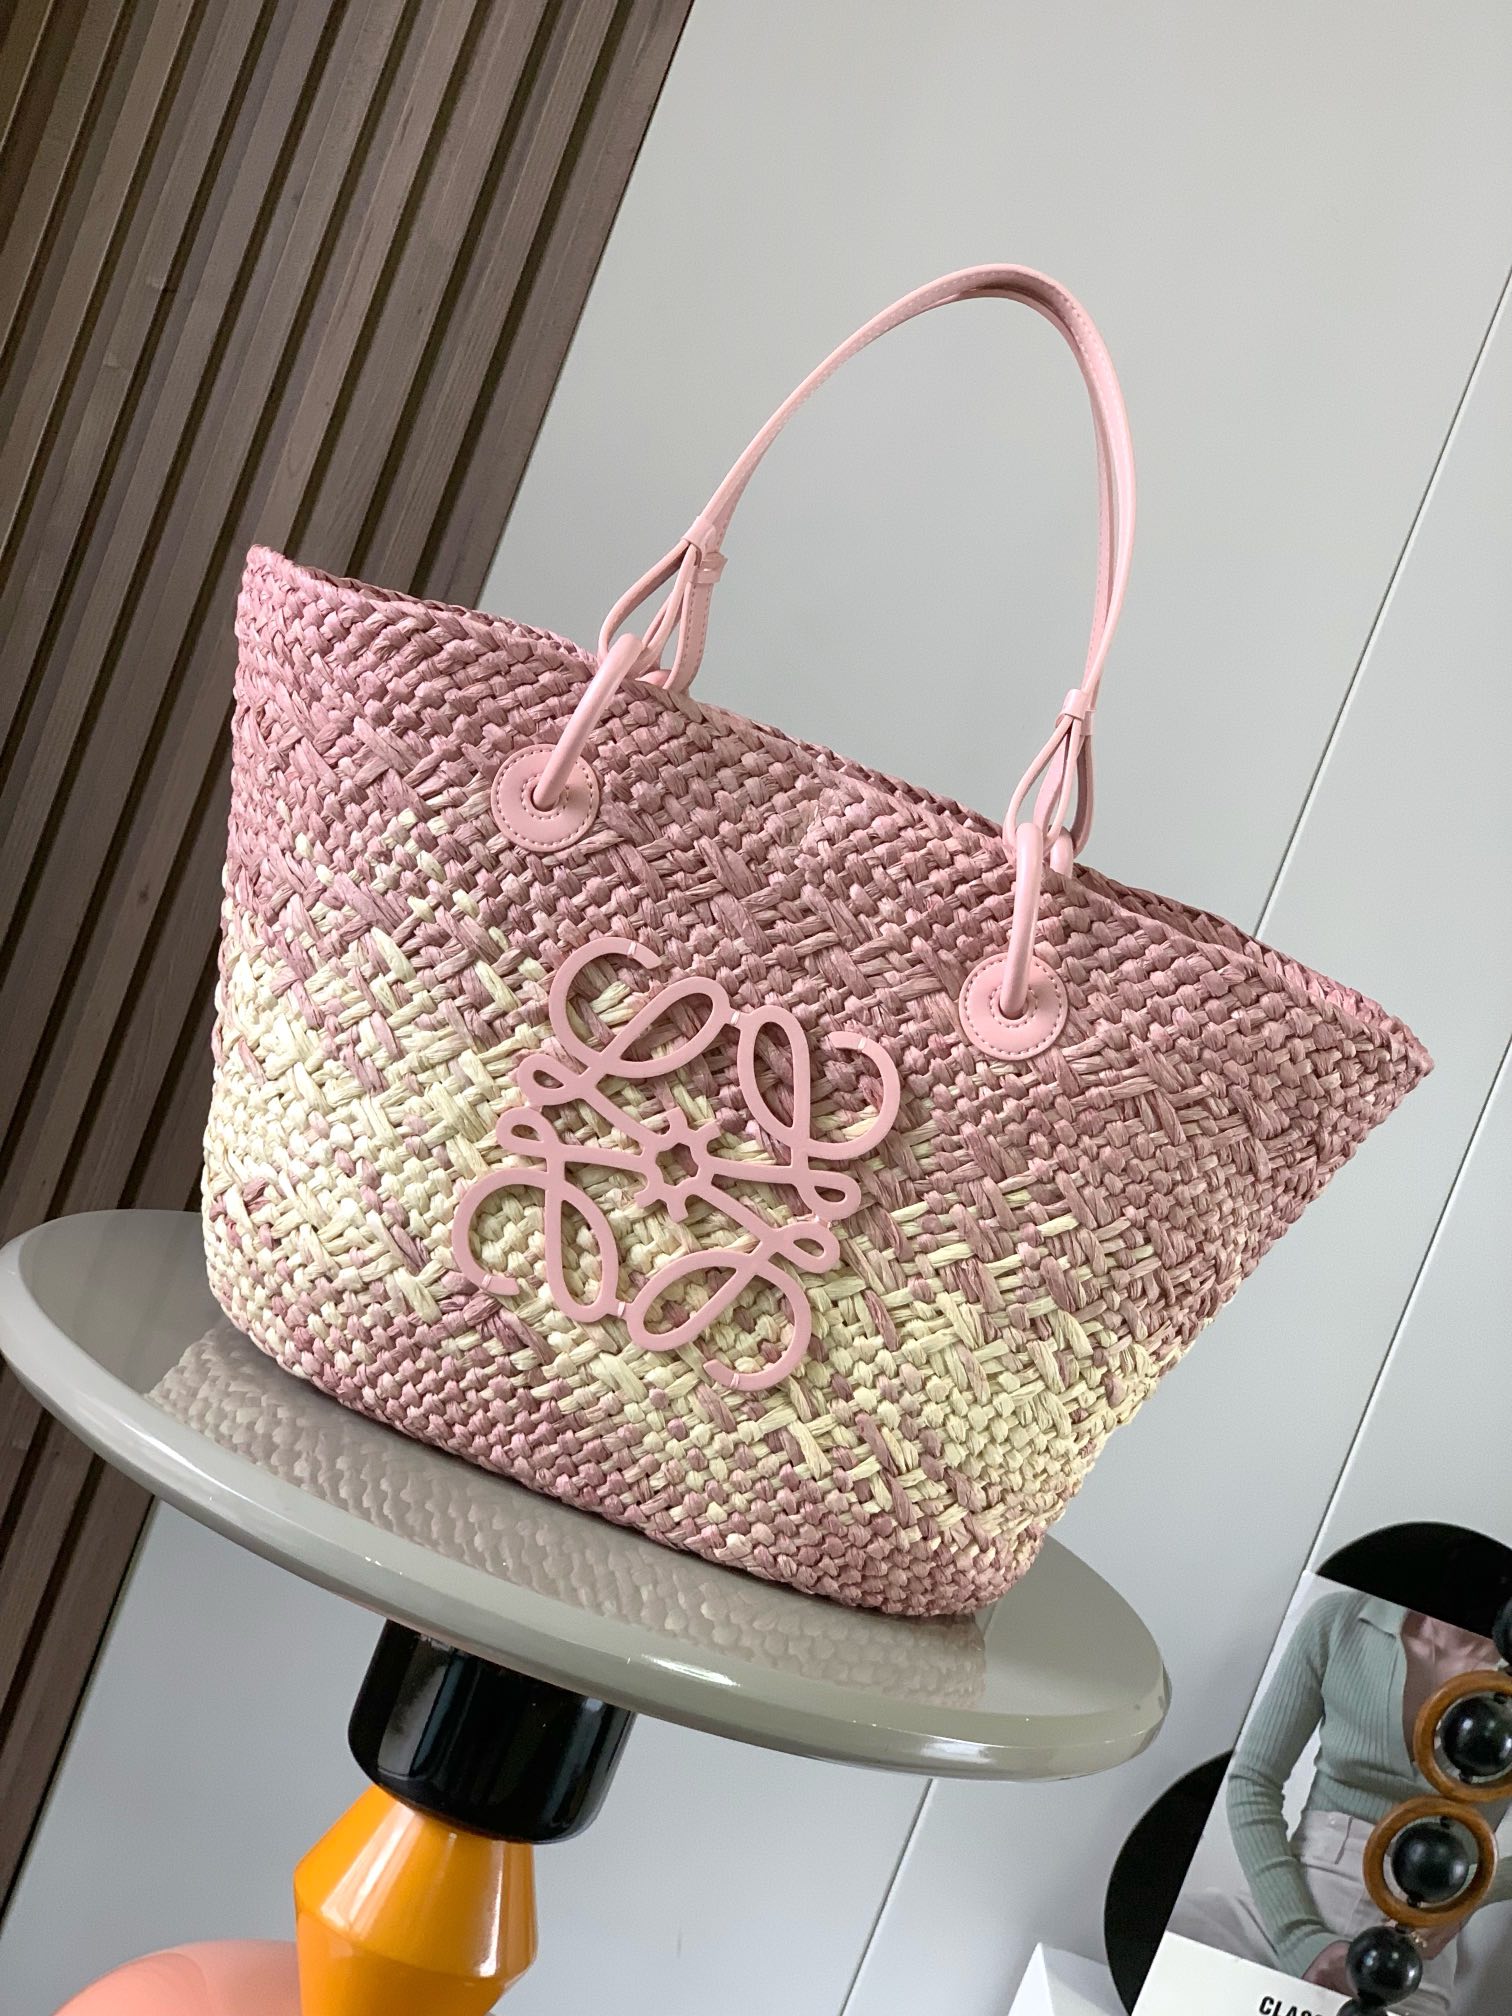 Loewe Anagram Basket Taschen Handtaschen Braun Rosa Weben Rindsleder Sommerkollektion